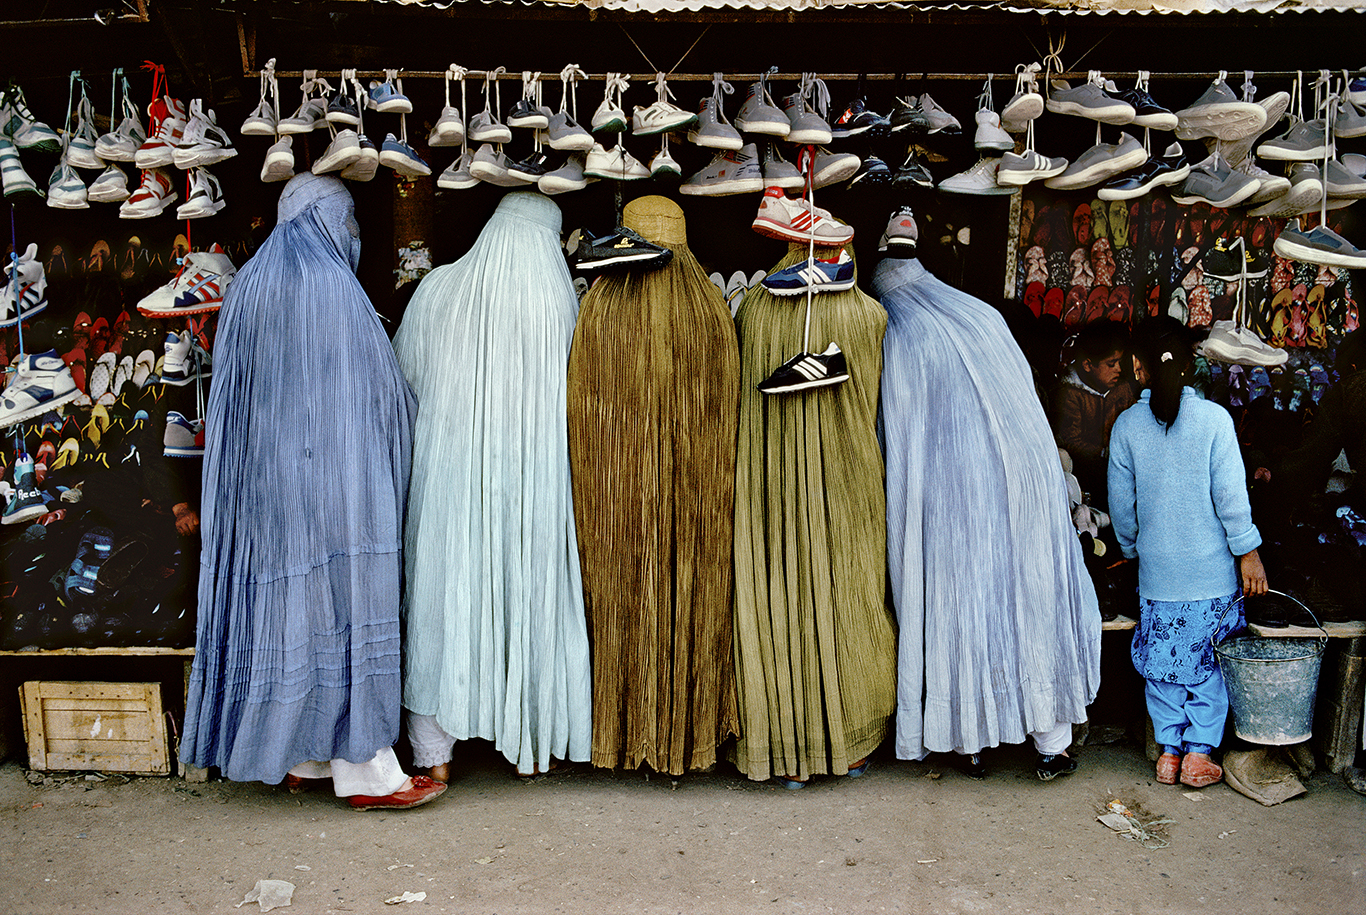 Стив МакКарри. Женщины в магазине обуви. Кабул, Афганистан, 1992
